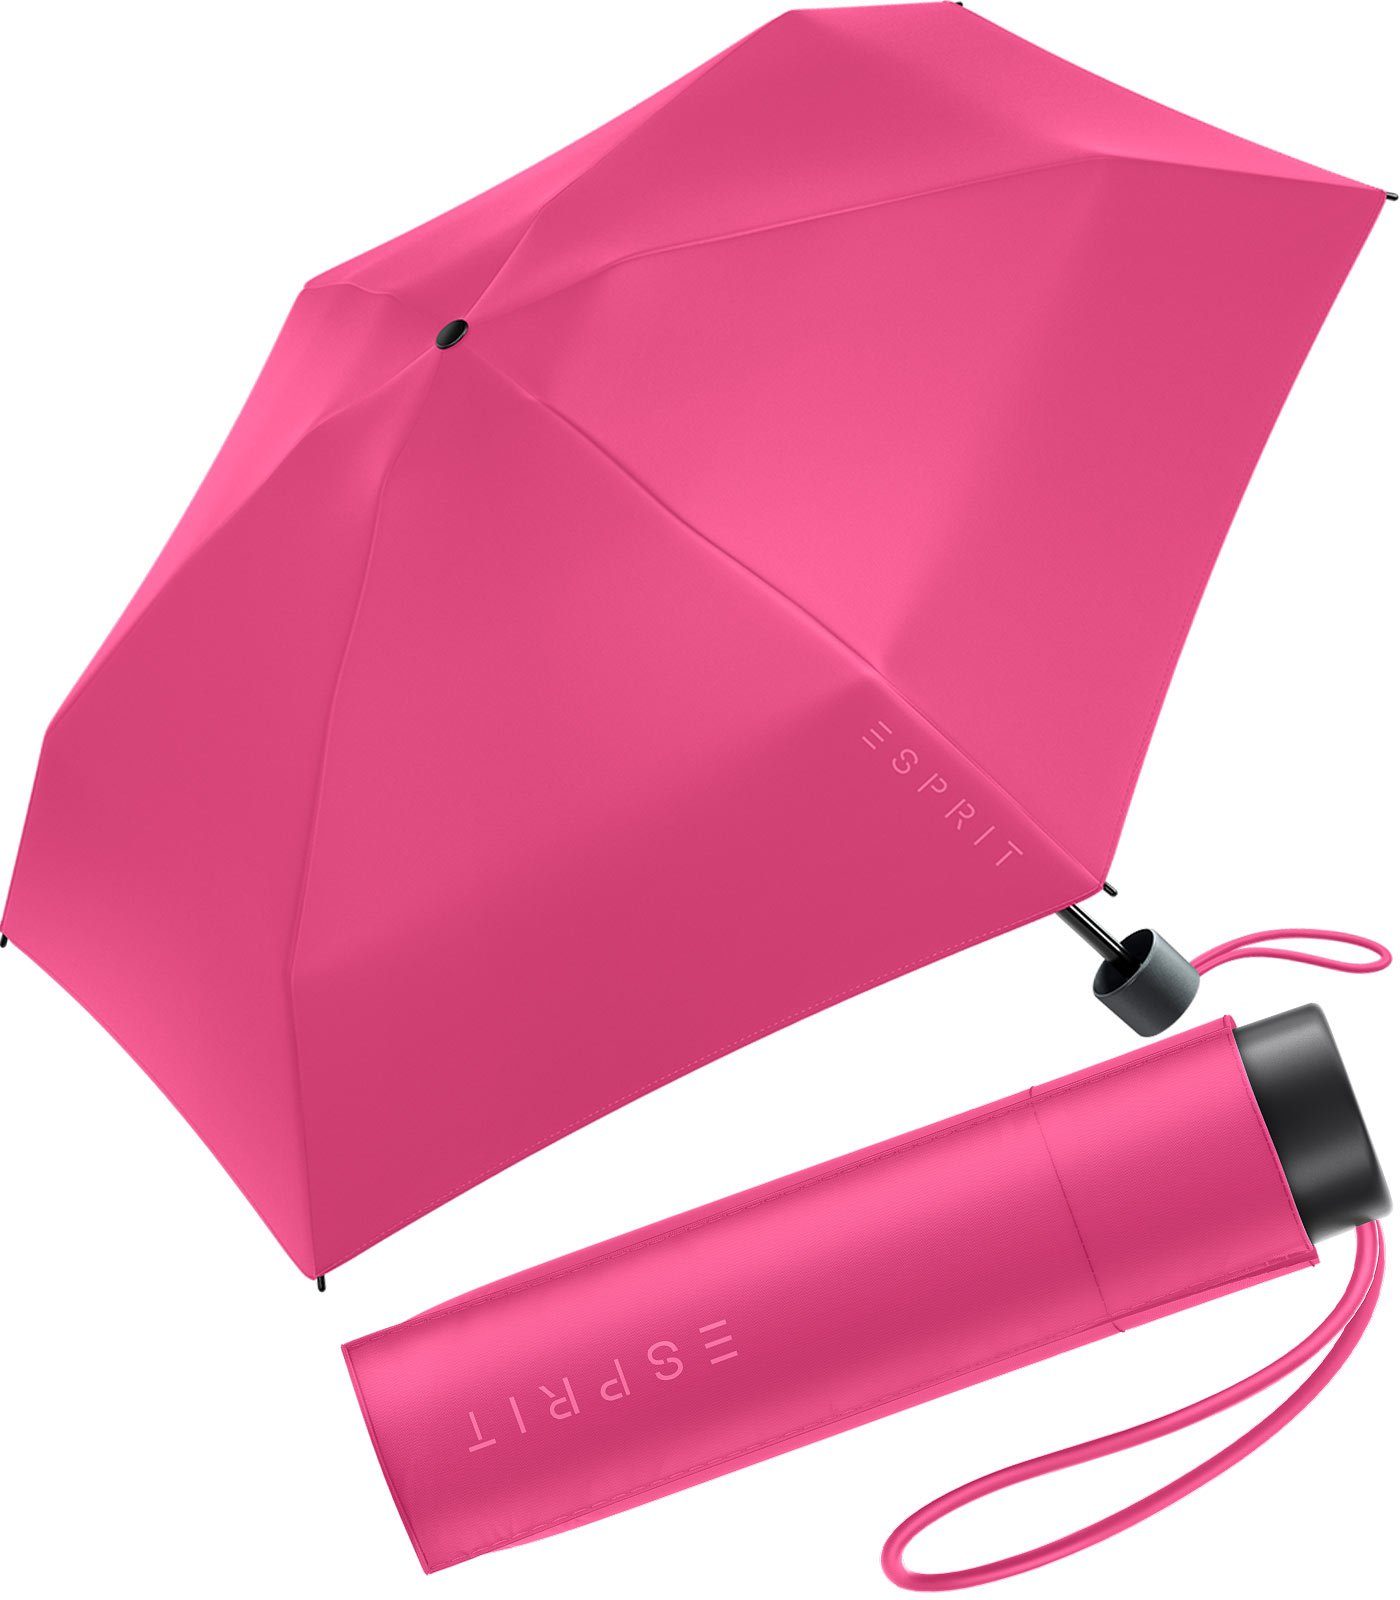 Esprit Langregenschirm Damen Super Mini Regenschirm Petito HW 2023, in den neuen Trendfarben - magenta rosa | Stockschirme